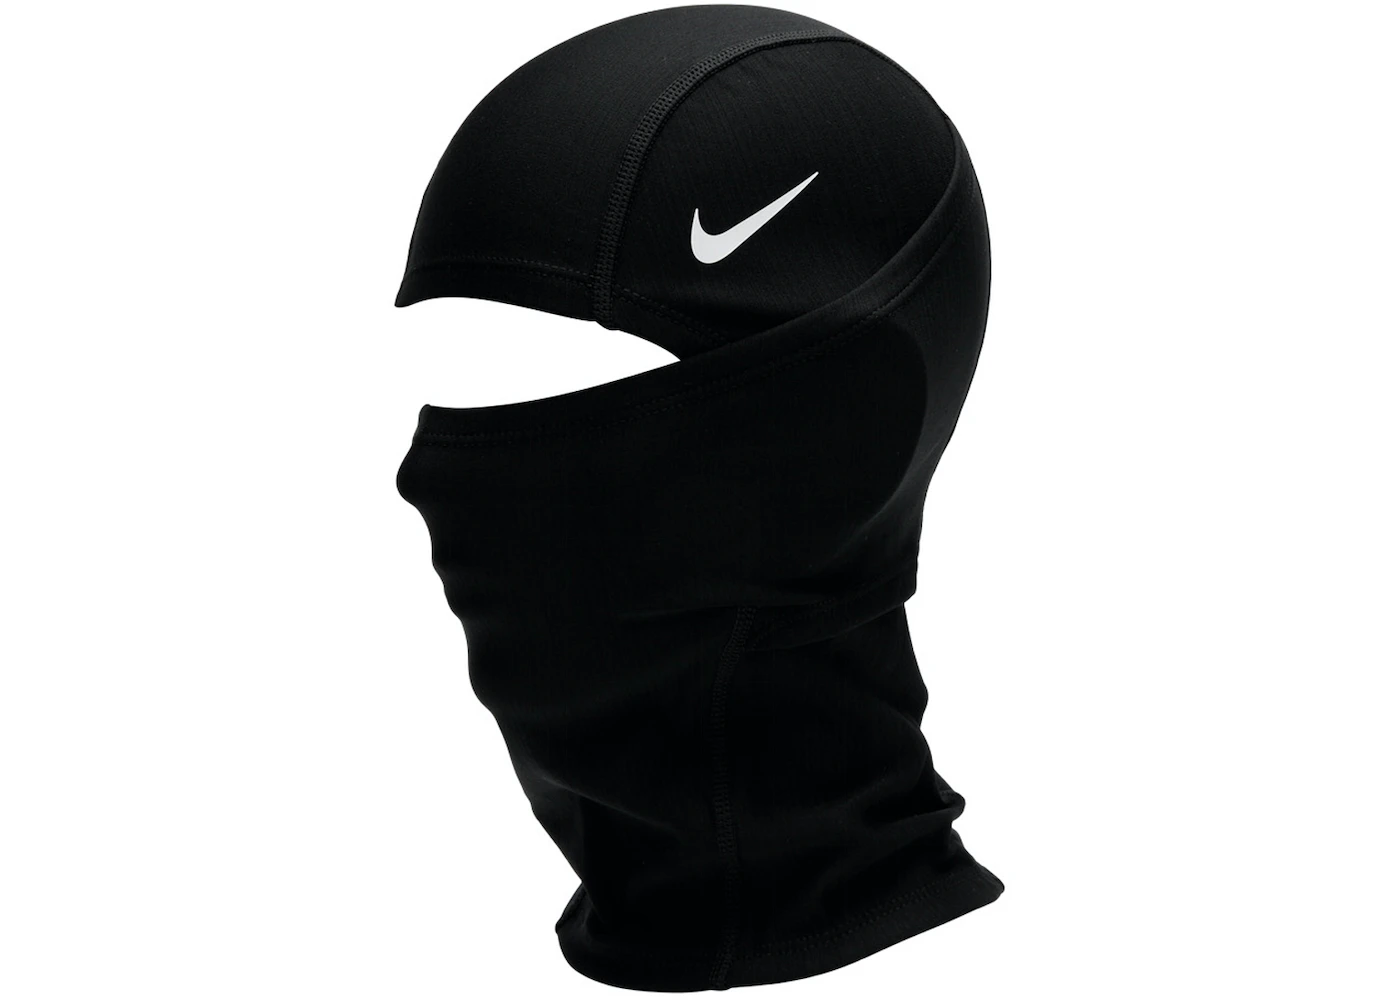 Intensief Westers lading Nike Pro THERMA-FIT Hyperwarm Hood Black/White - US